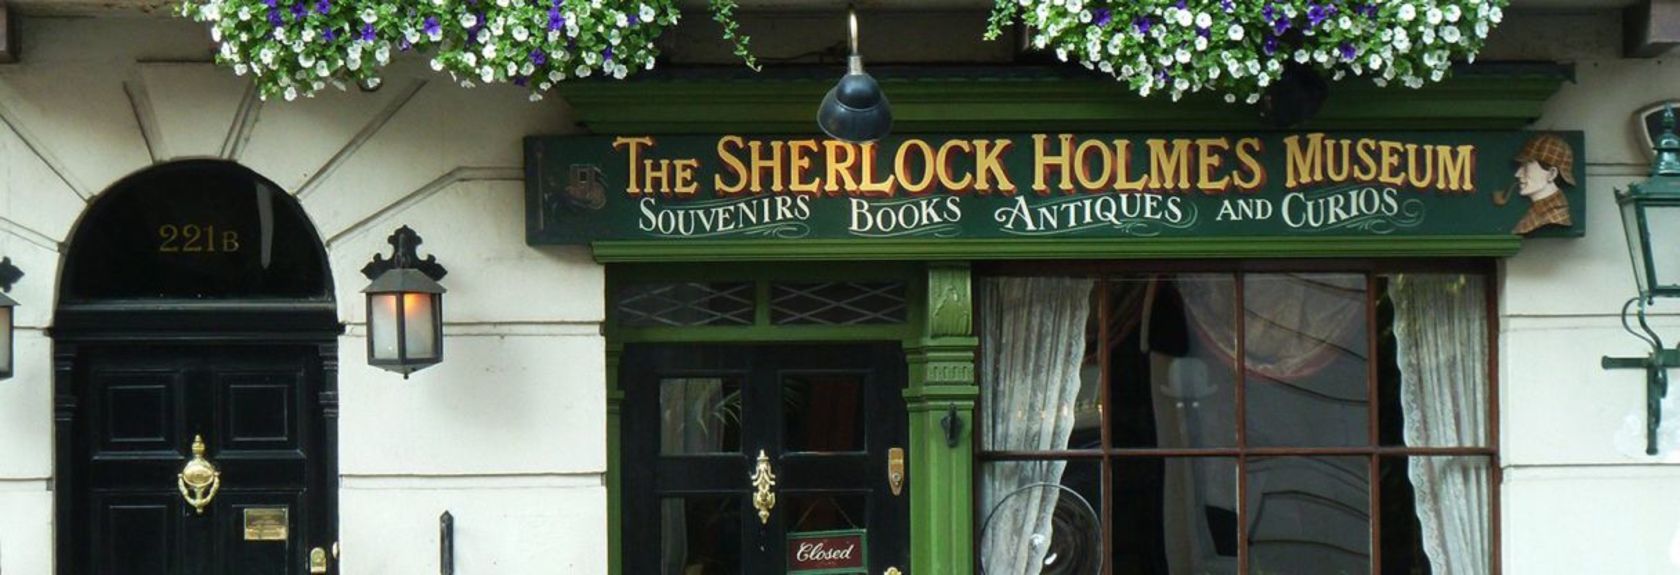 Se você é um grande fã do detetive Sherlock Holmes, uma visita ao Sherlock Holmes Museu não deve ser perdida na sua pausa em Londres. O pequeno museu é totalmente dedicado a Sherlock Holmes e foi adaptado para a época do século XIX.